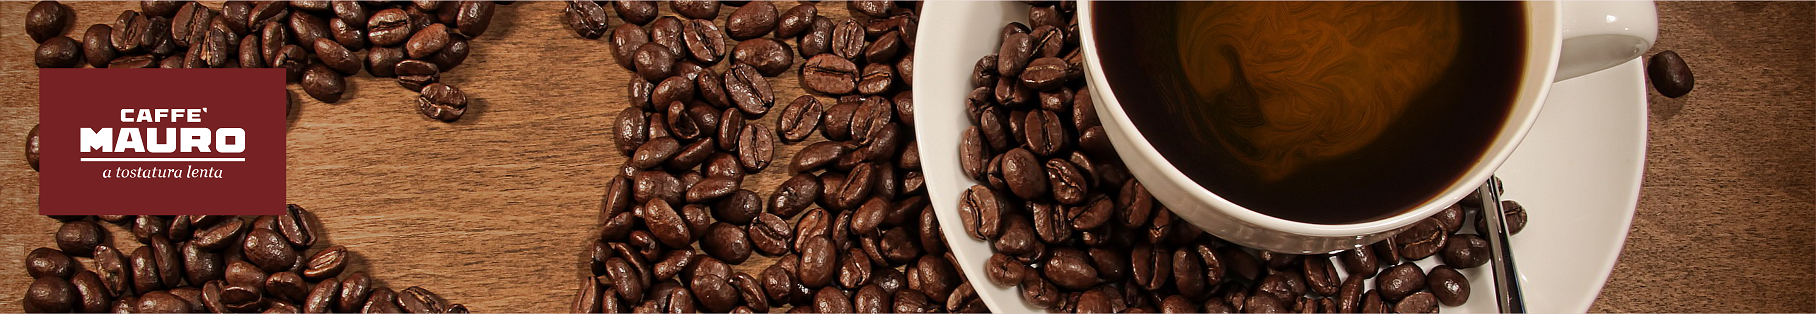 ყავა. იტალიური ყავა MAURO, 100%-იანი არაბიკა. თურქული ყავა, უკოფეინო ყავა, ბიო ყავა. დაფქვი და გაიყოლე.